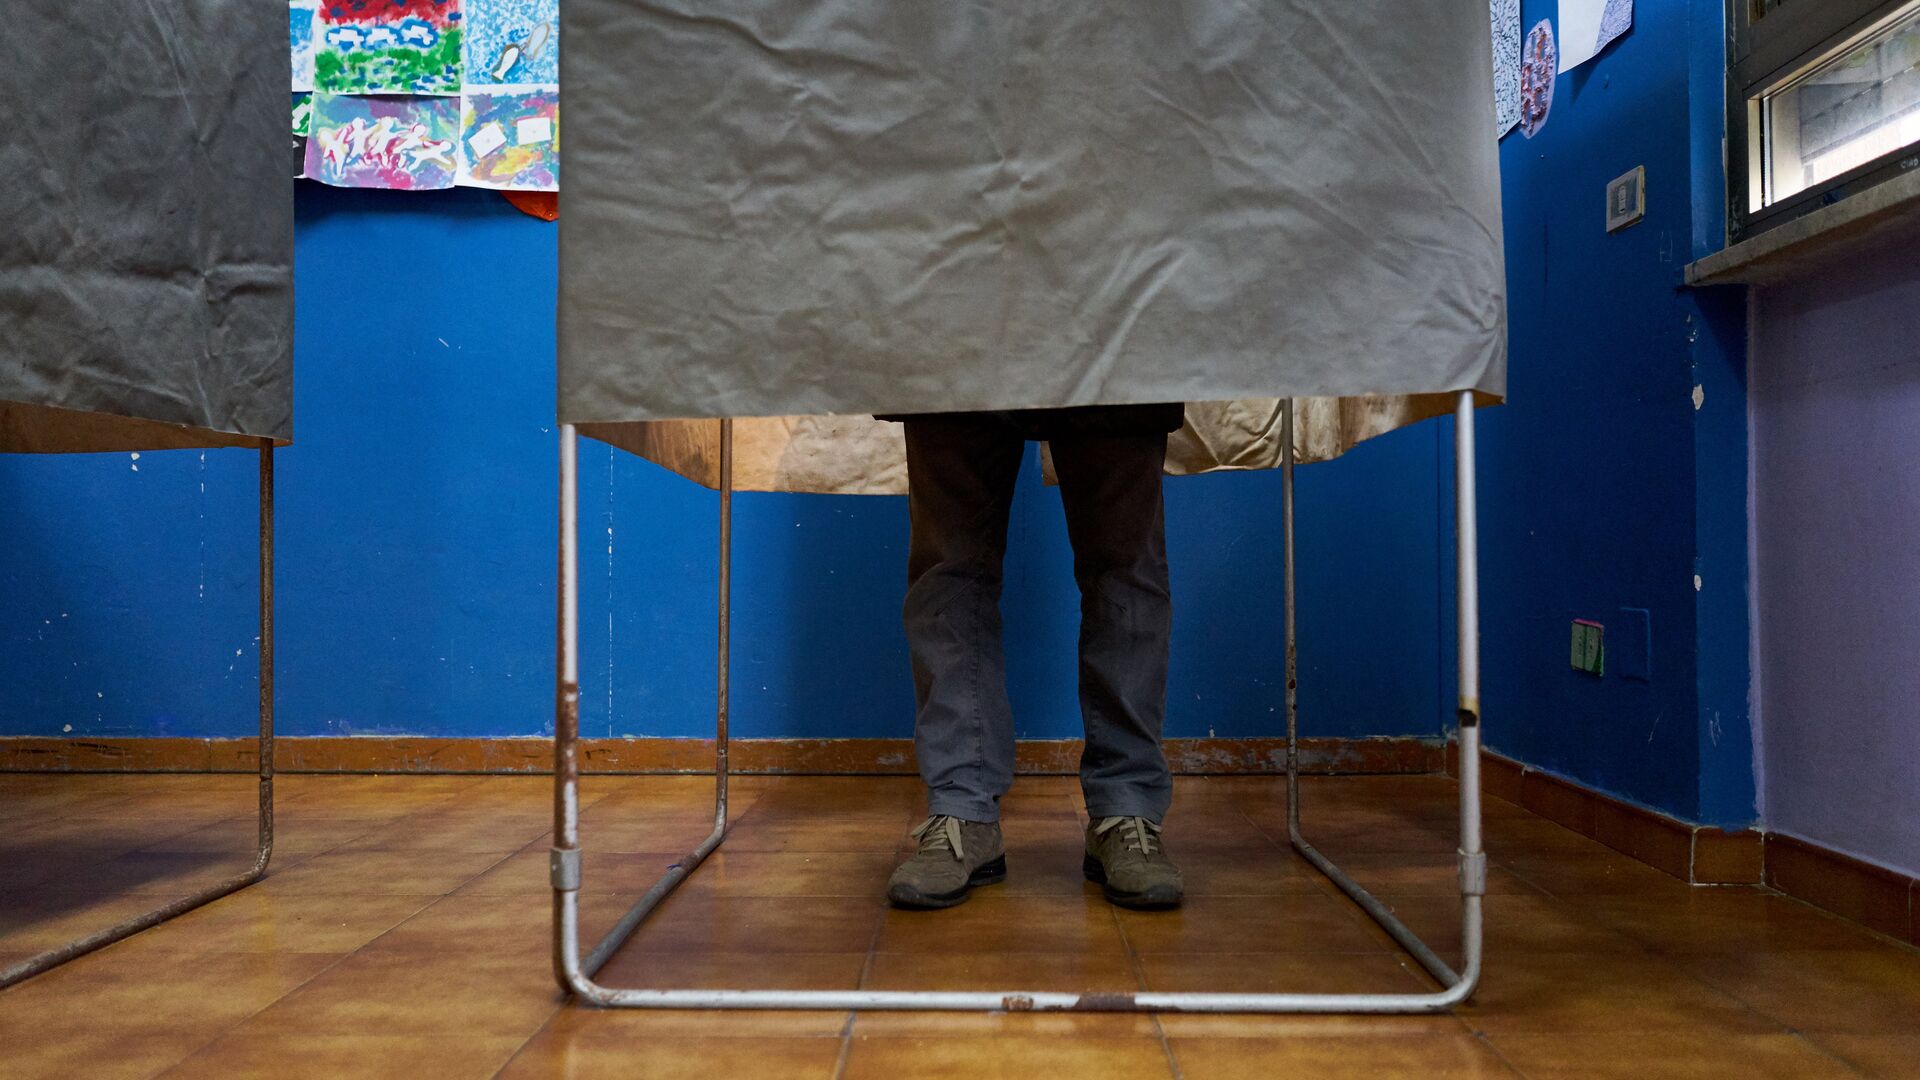 Избиратель в кабинке для голосования на одном из избирательных участков Рима во время парламентских выборов в Италии. 4 марта 2018 - РИА Новости, 1920, 13.09.2022